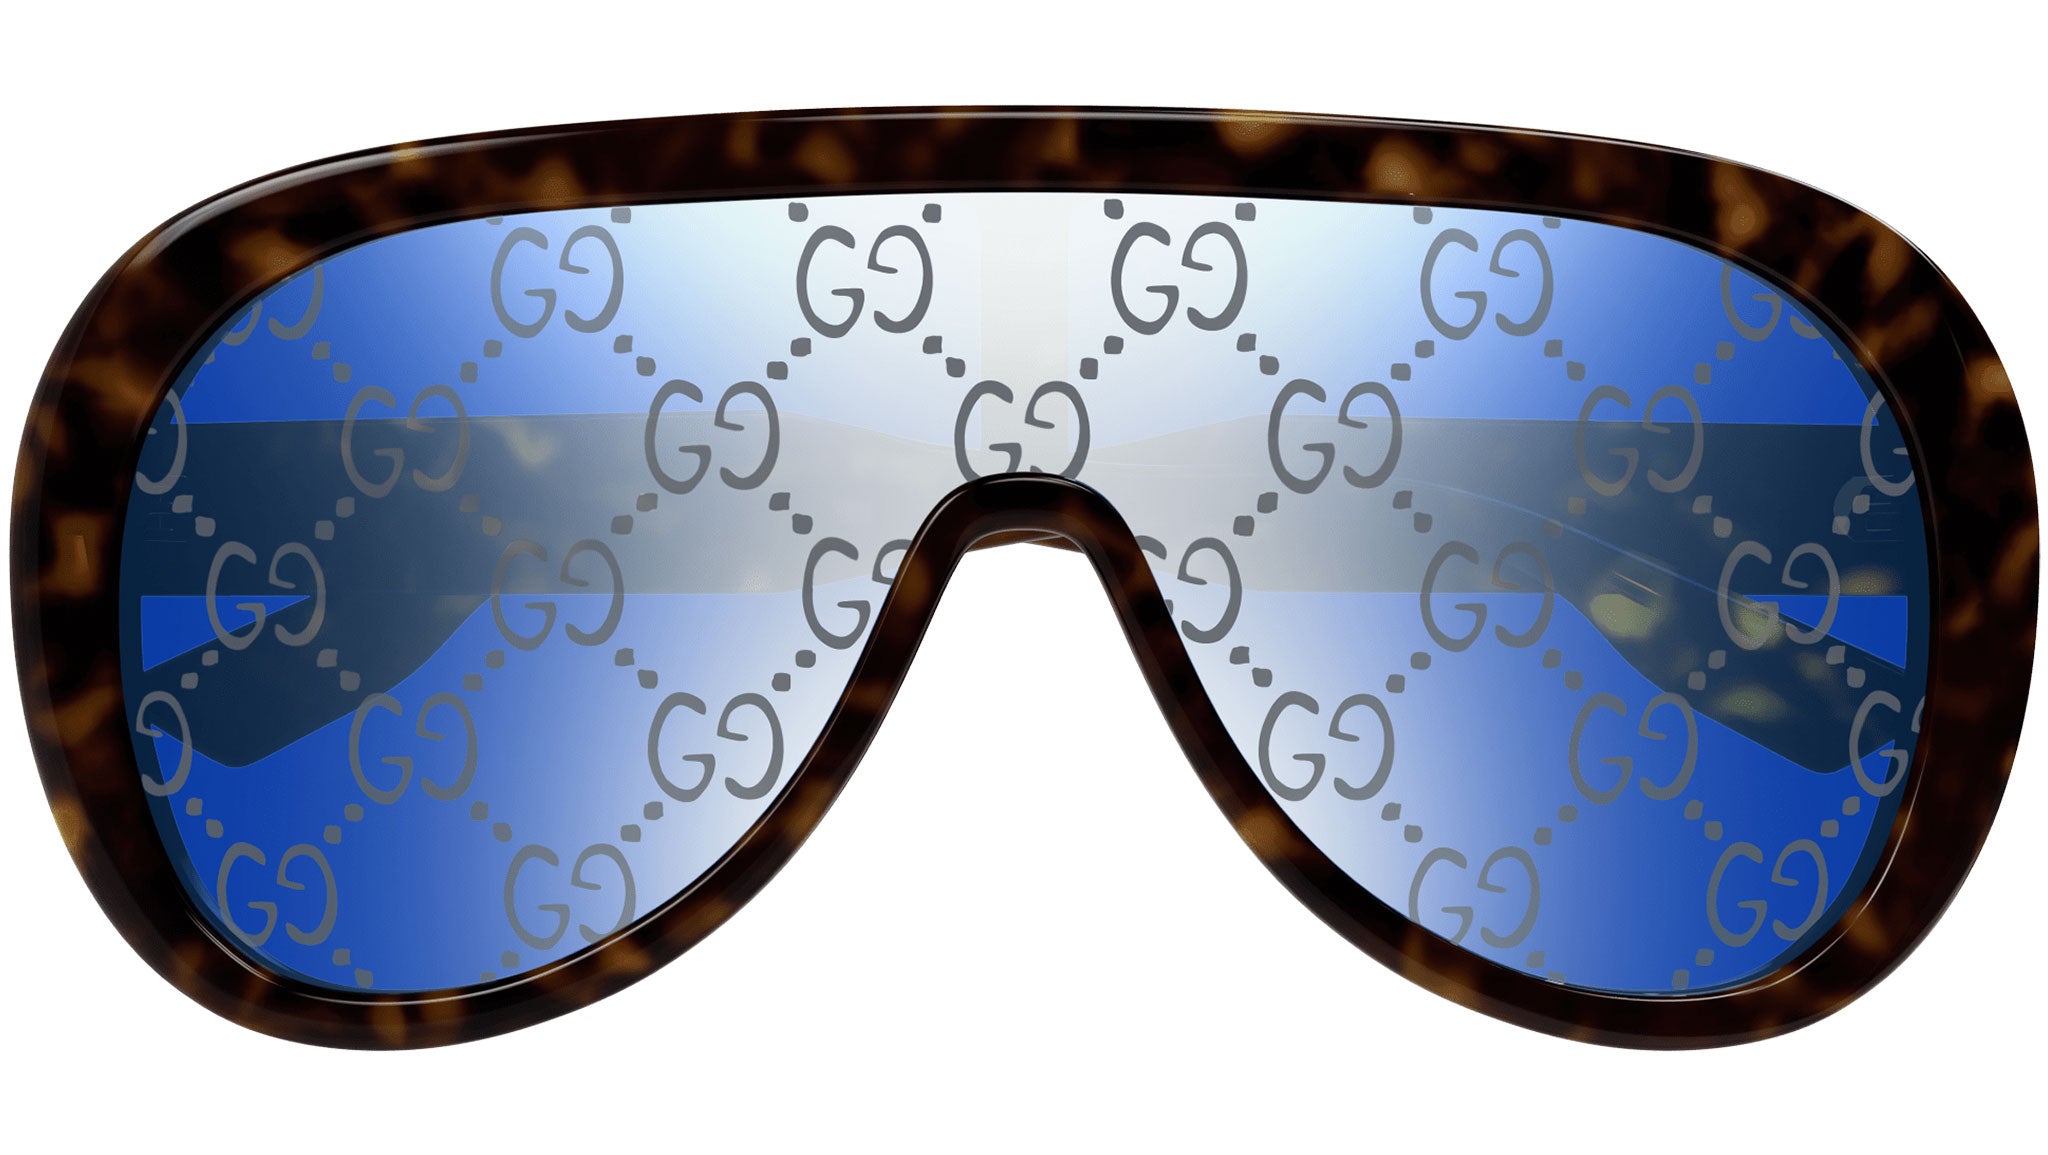 GUCCI, Monogrammed Shield Ski Goggles